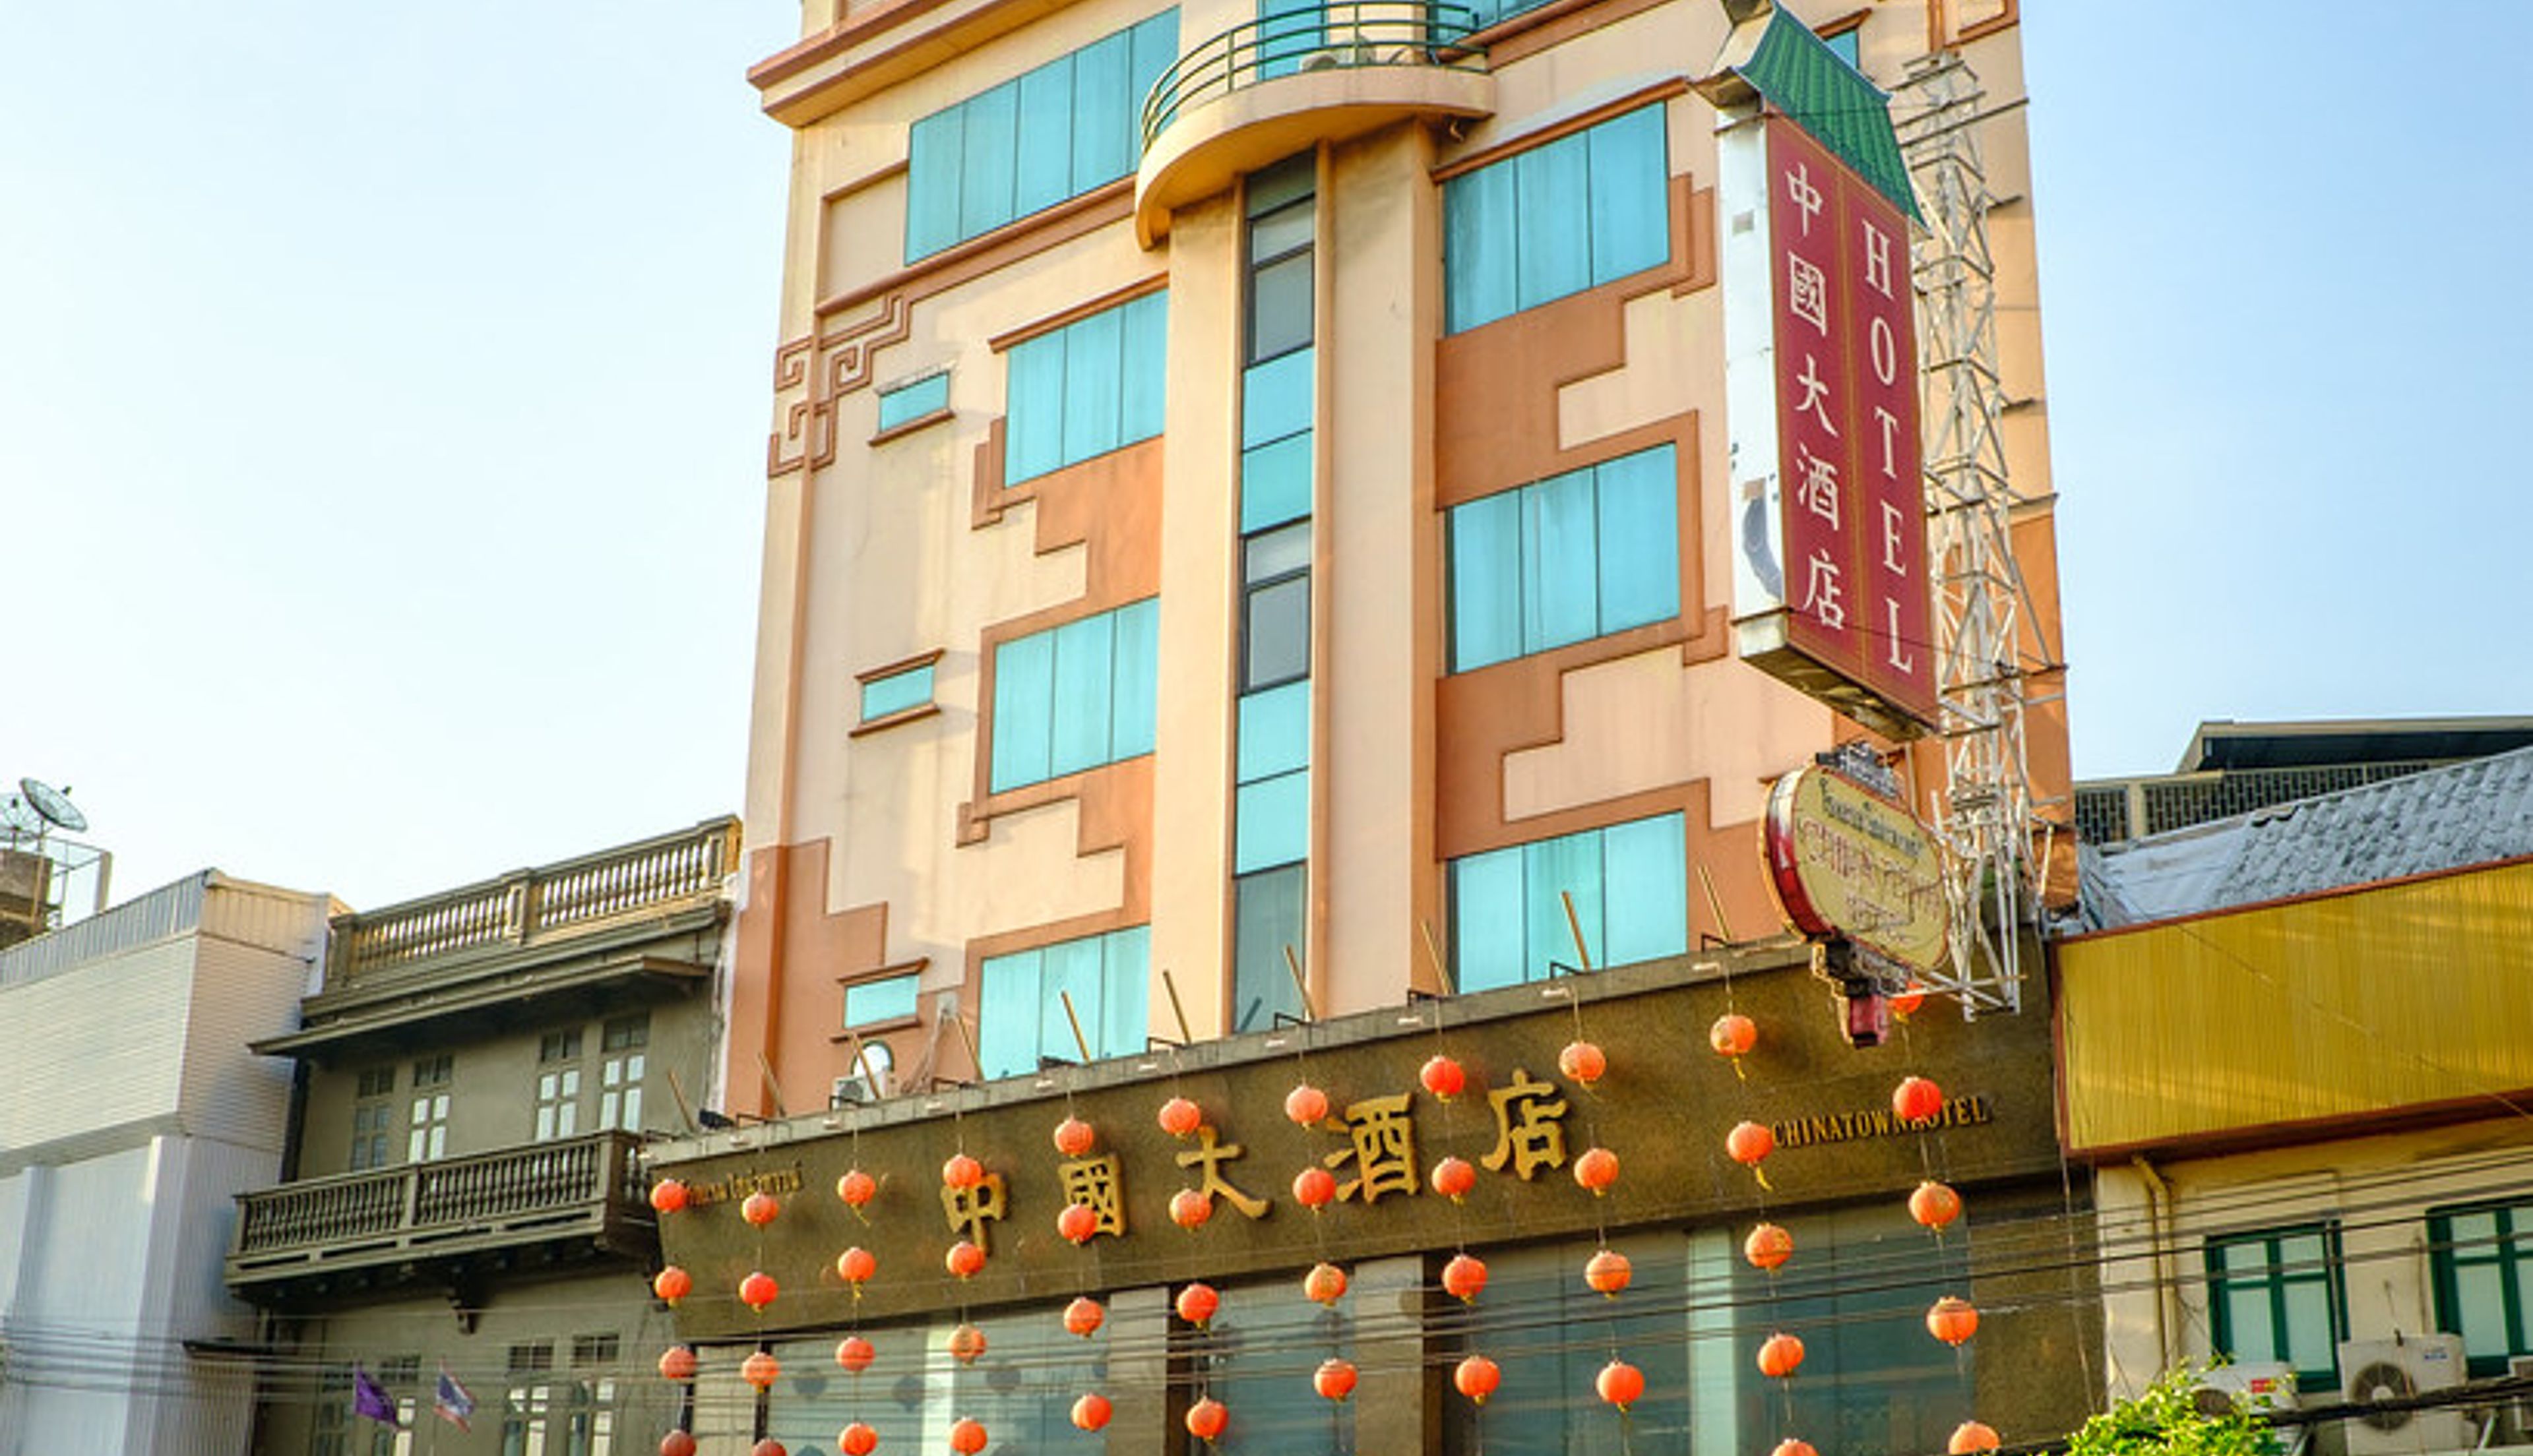 chinatown hotel thailand